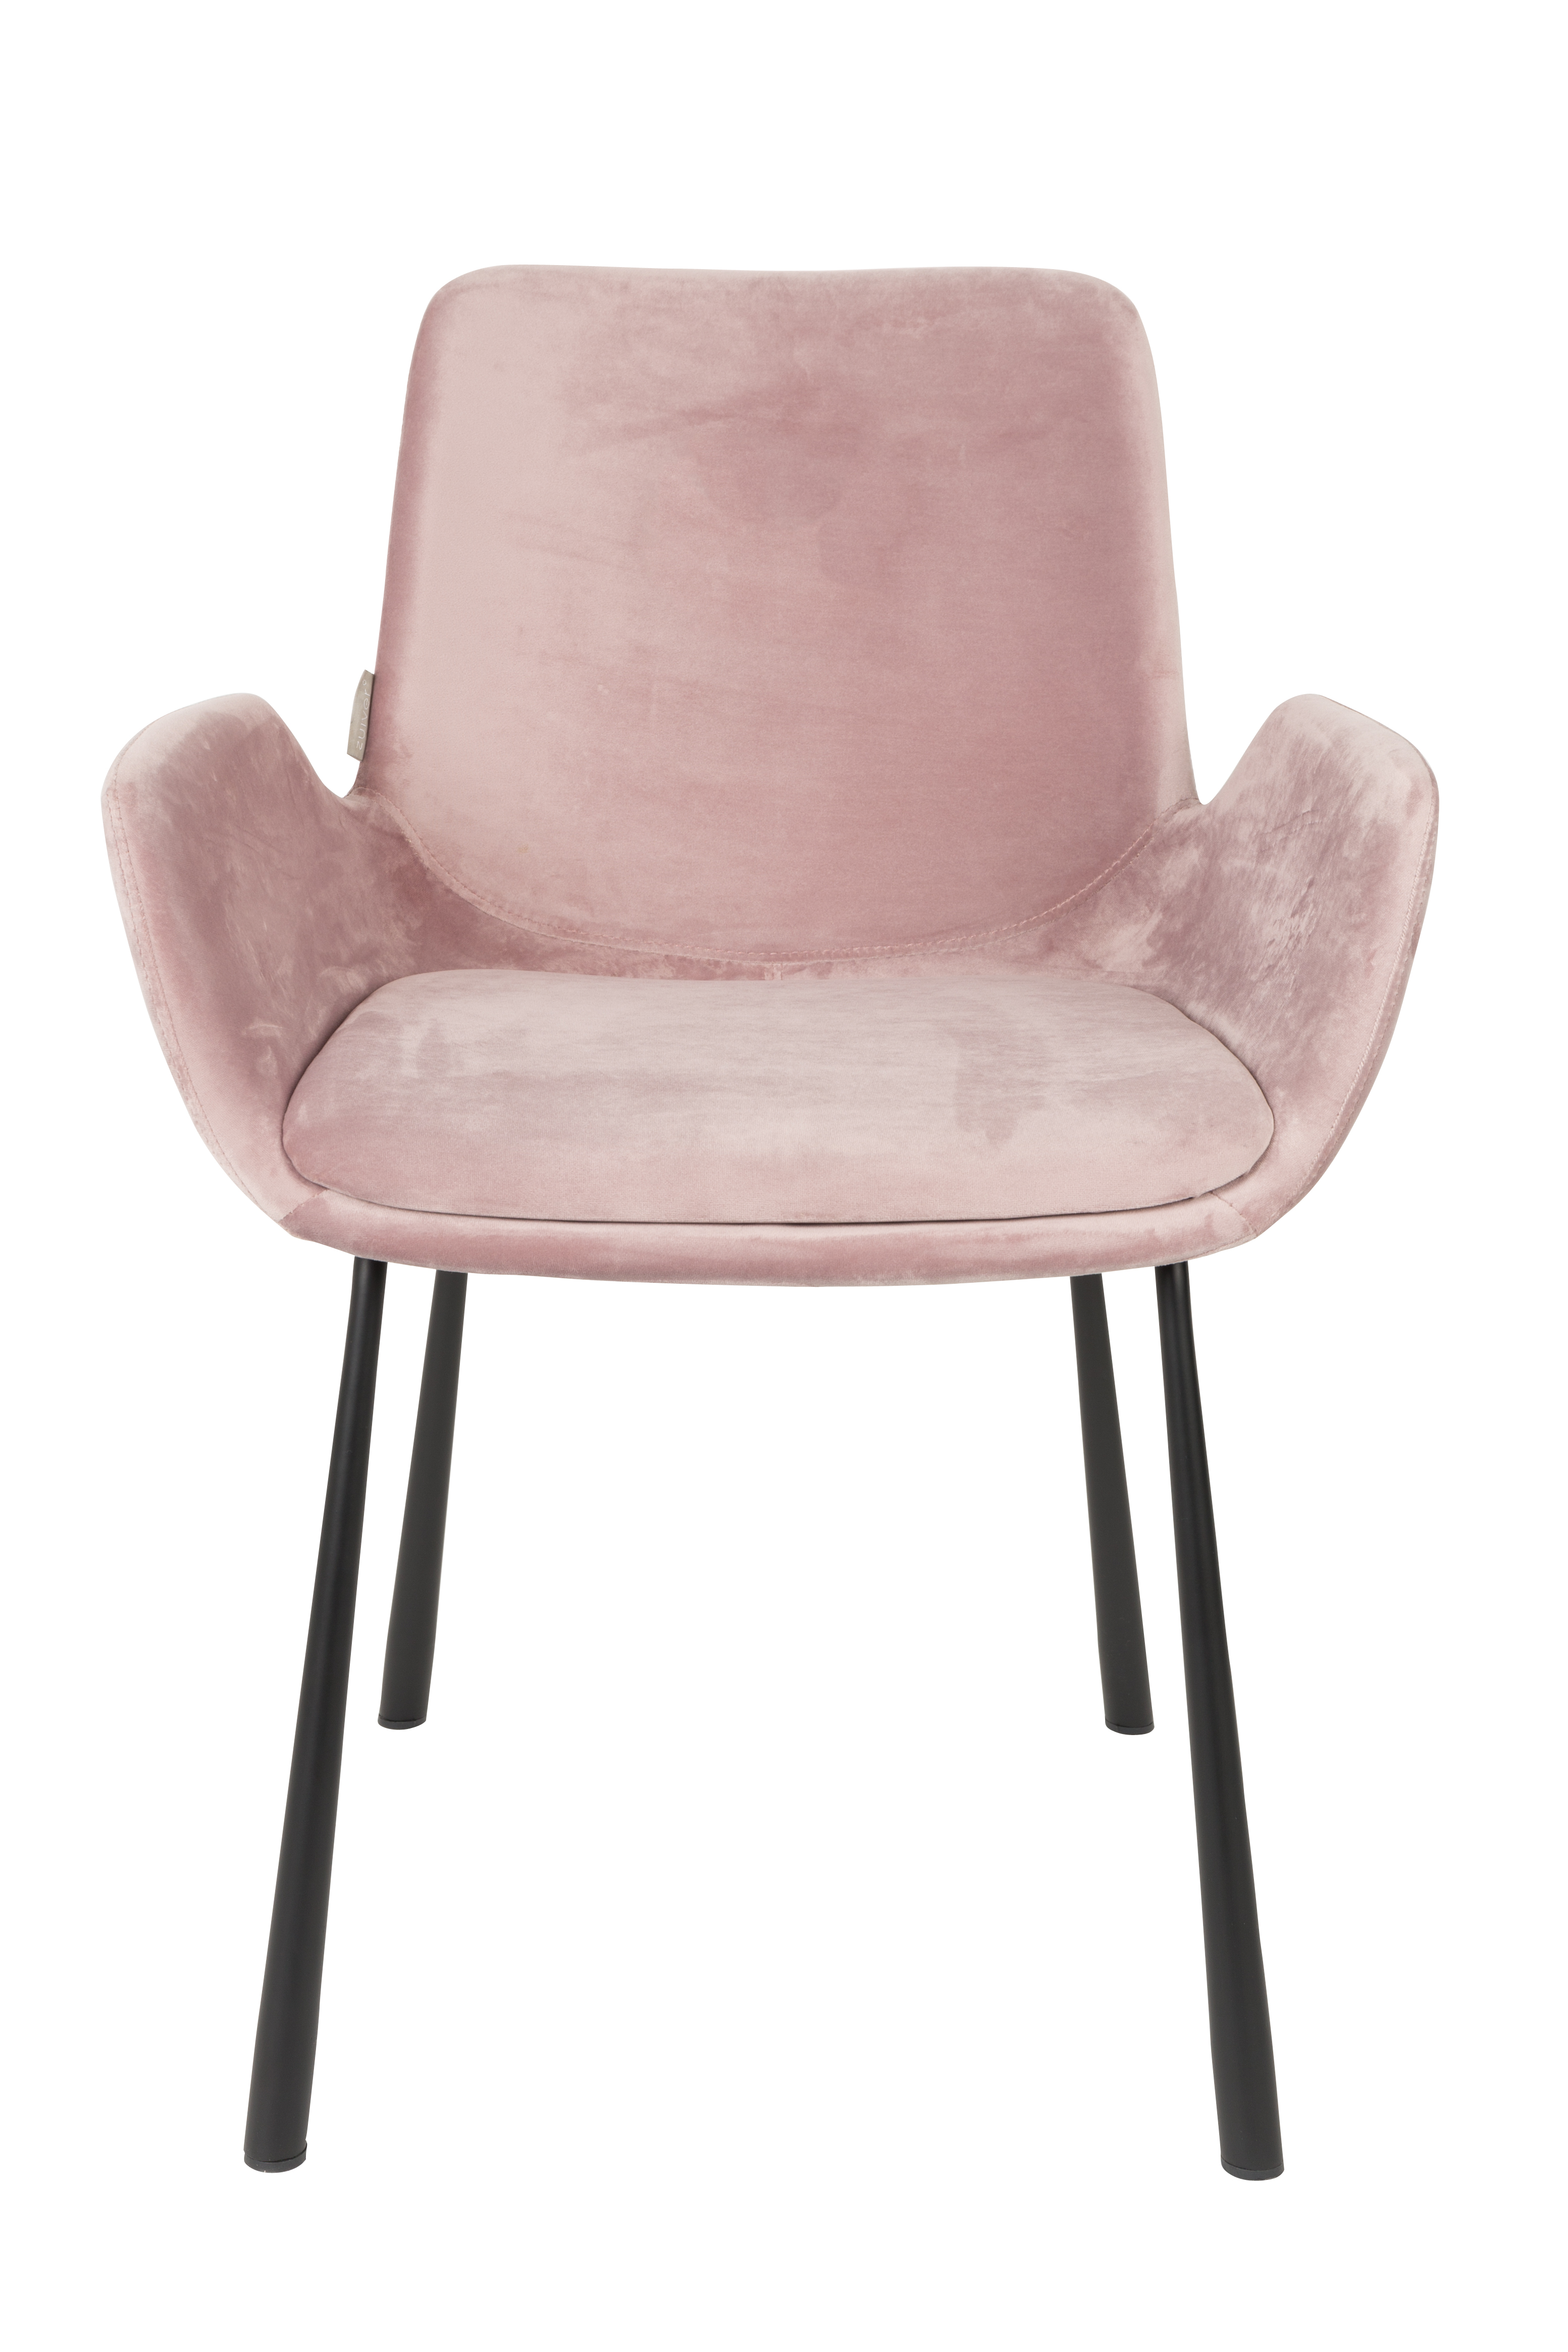 Zuiver Brit čalúnená stolička - Ružová - Výpredaj 2